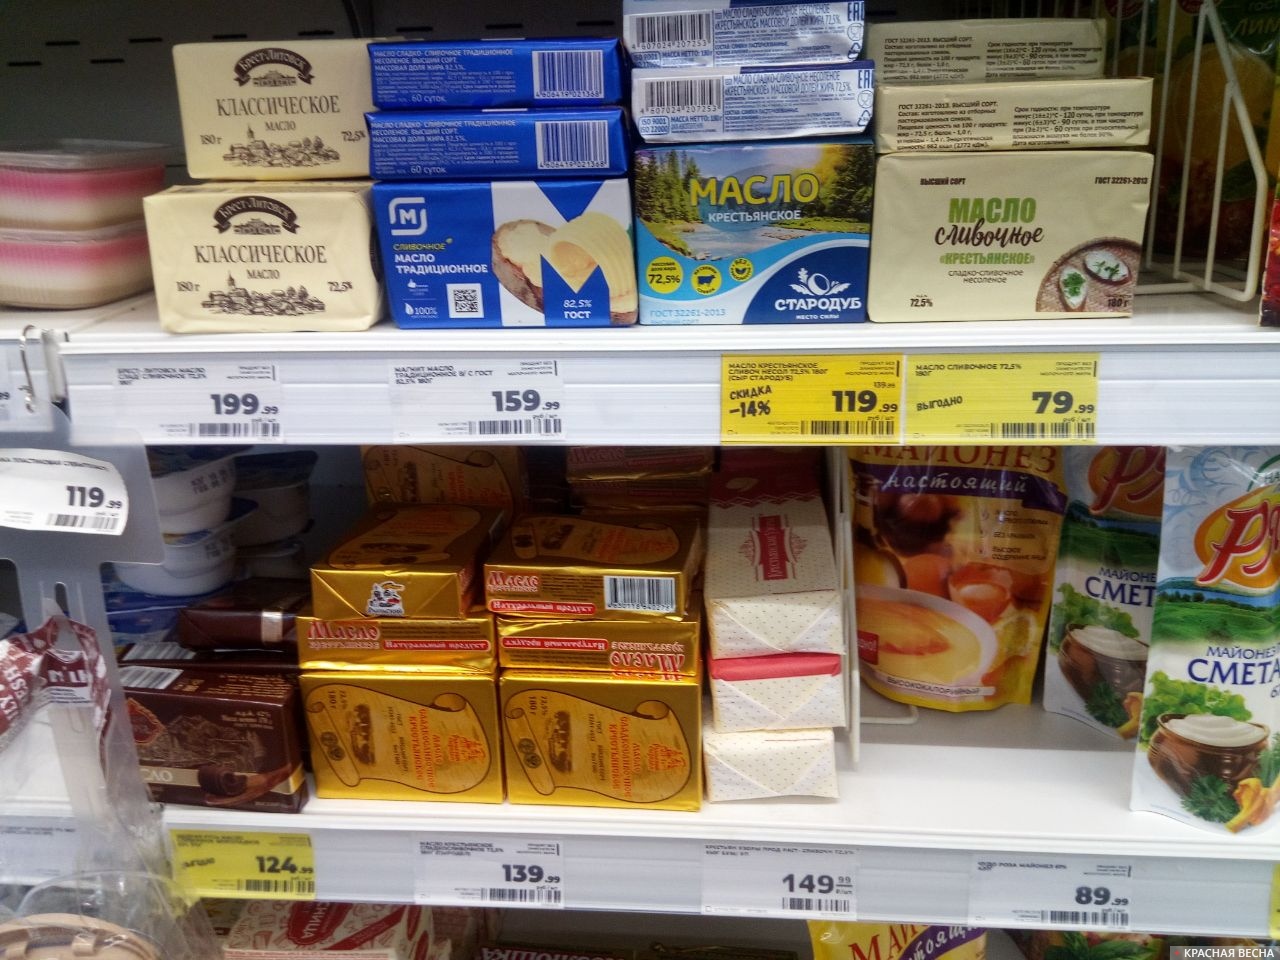 Смоленск. Супермаркет Магнит на ул. 8 марта. Масло сливочное. Ценыjpg